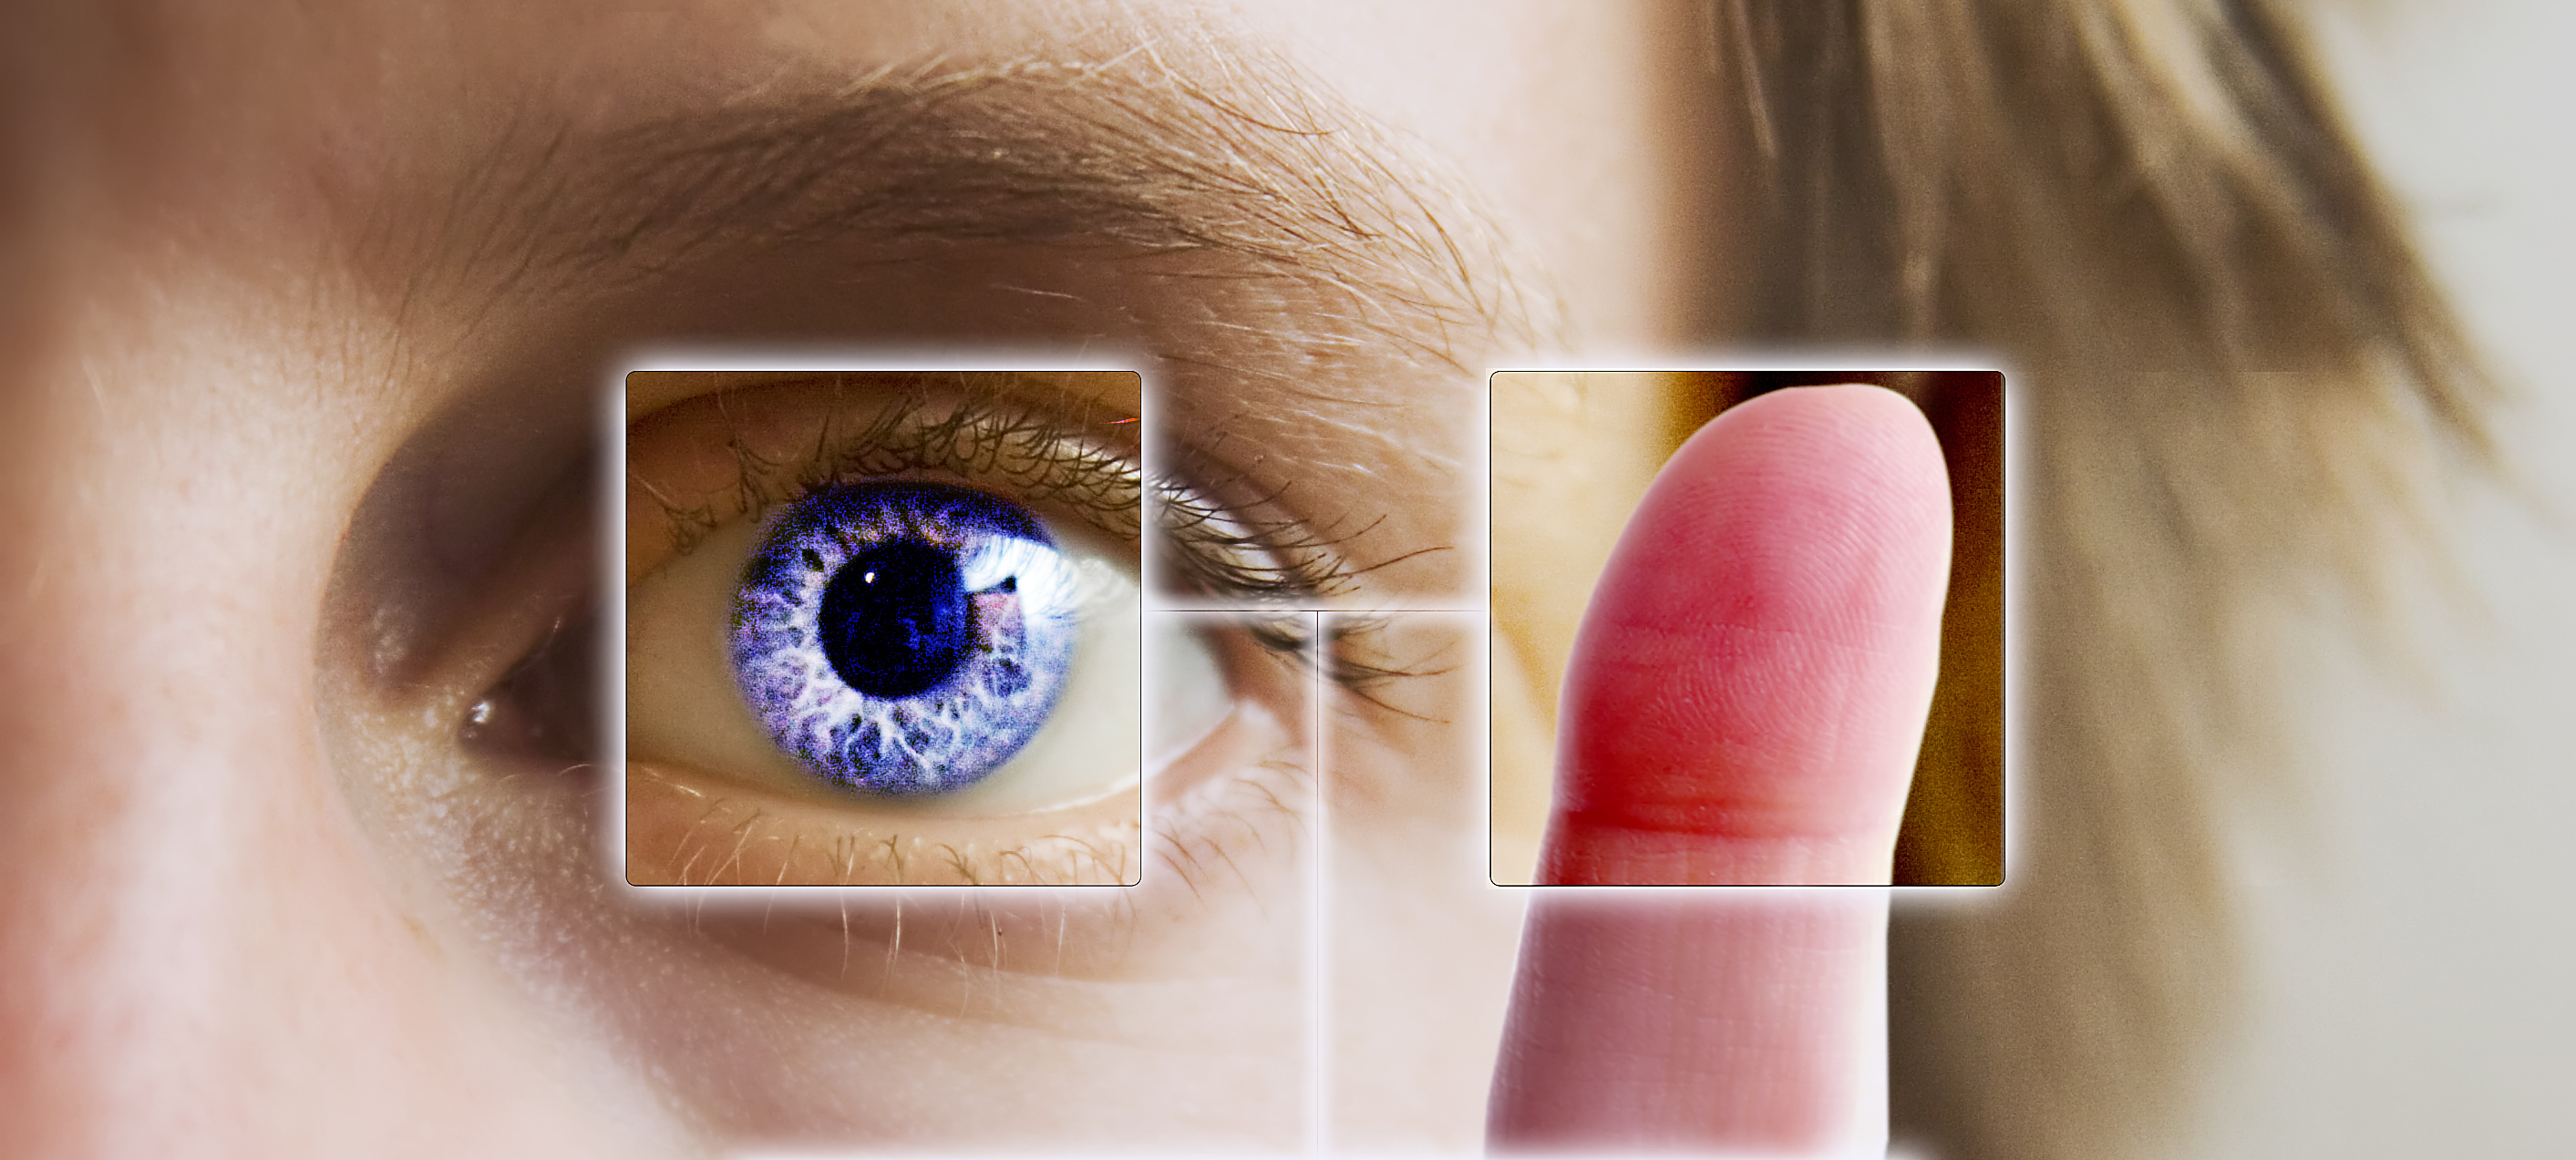 生物辨識技術多元，「指紋辨識」「虹膜辨識」是越來越普遍的科技應用。